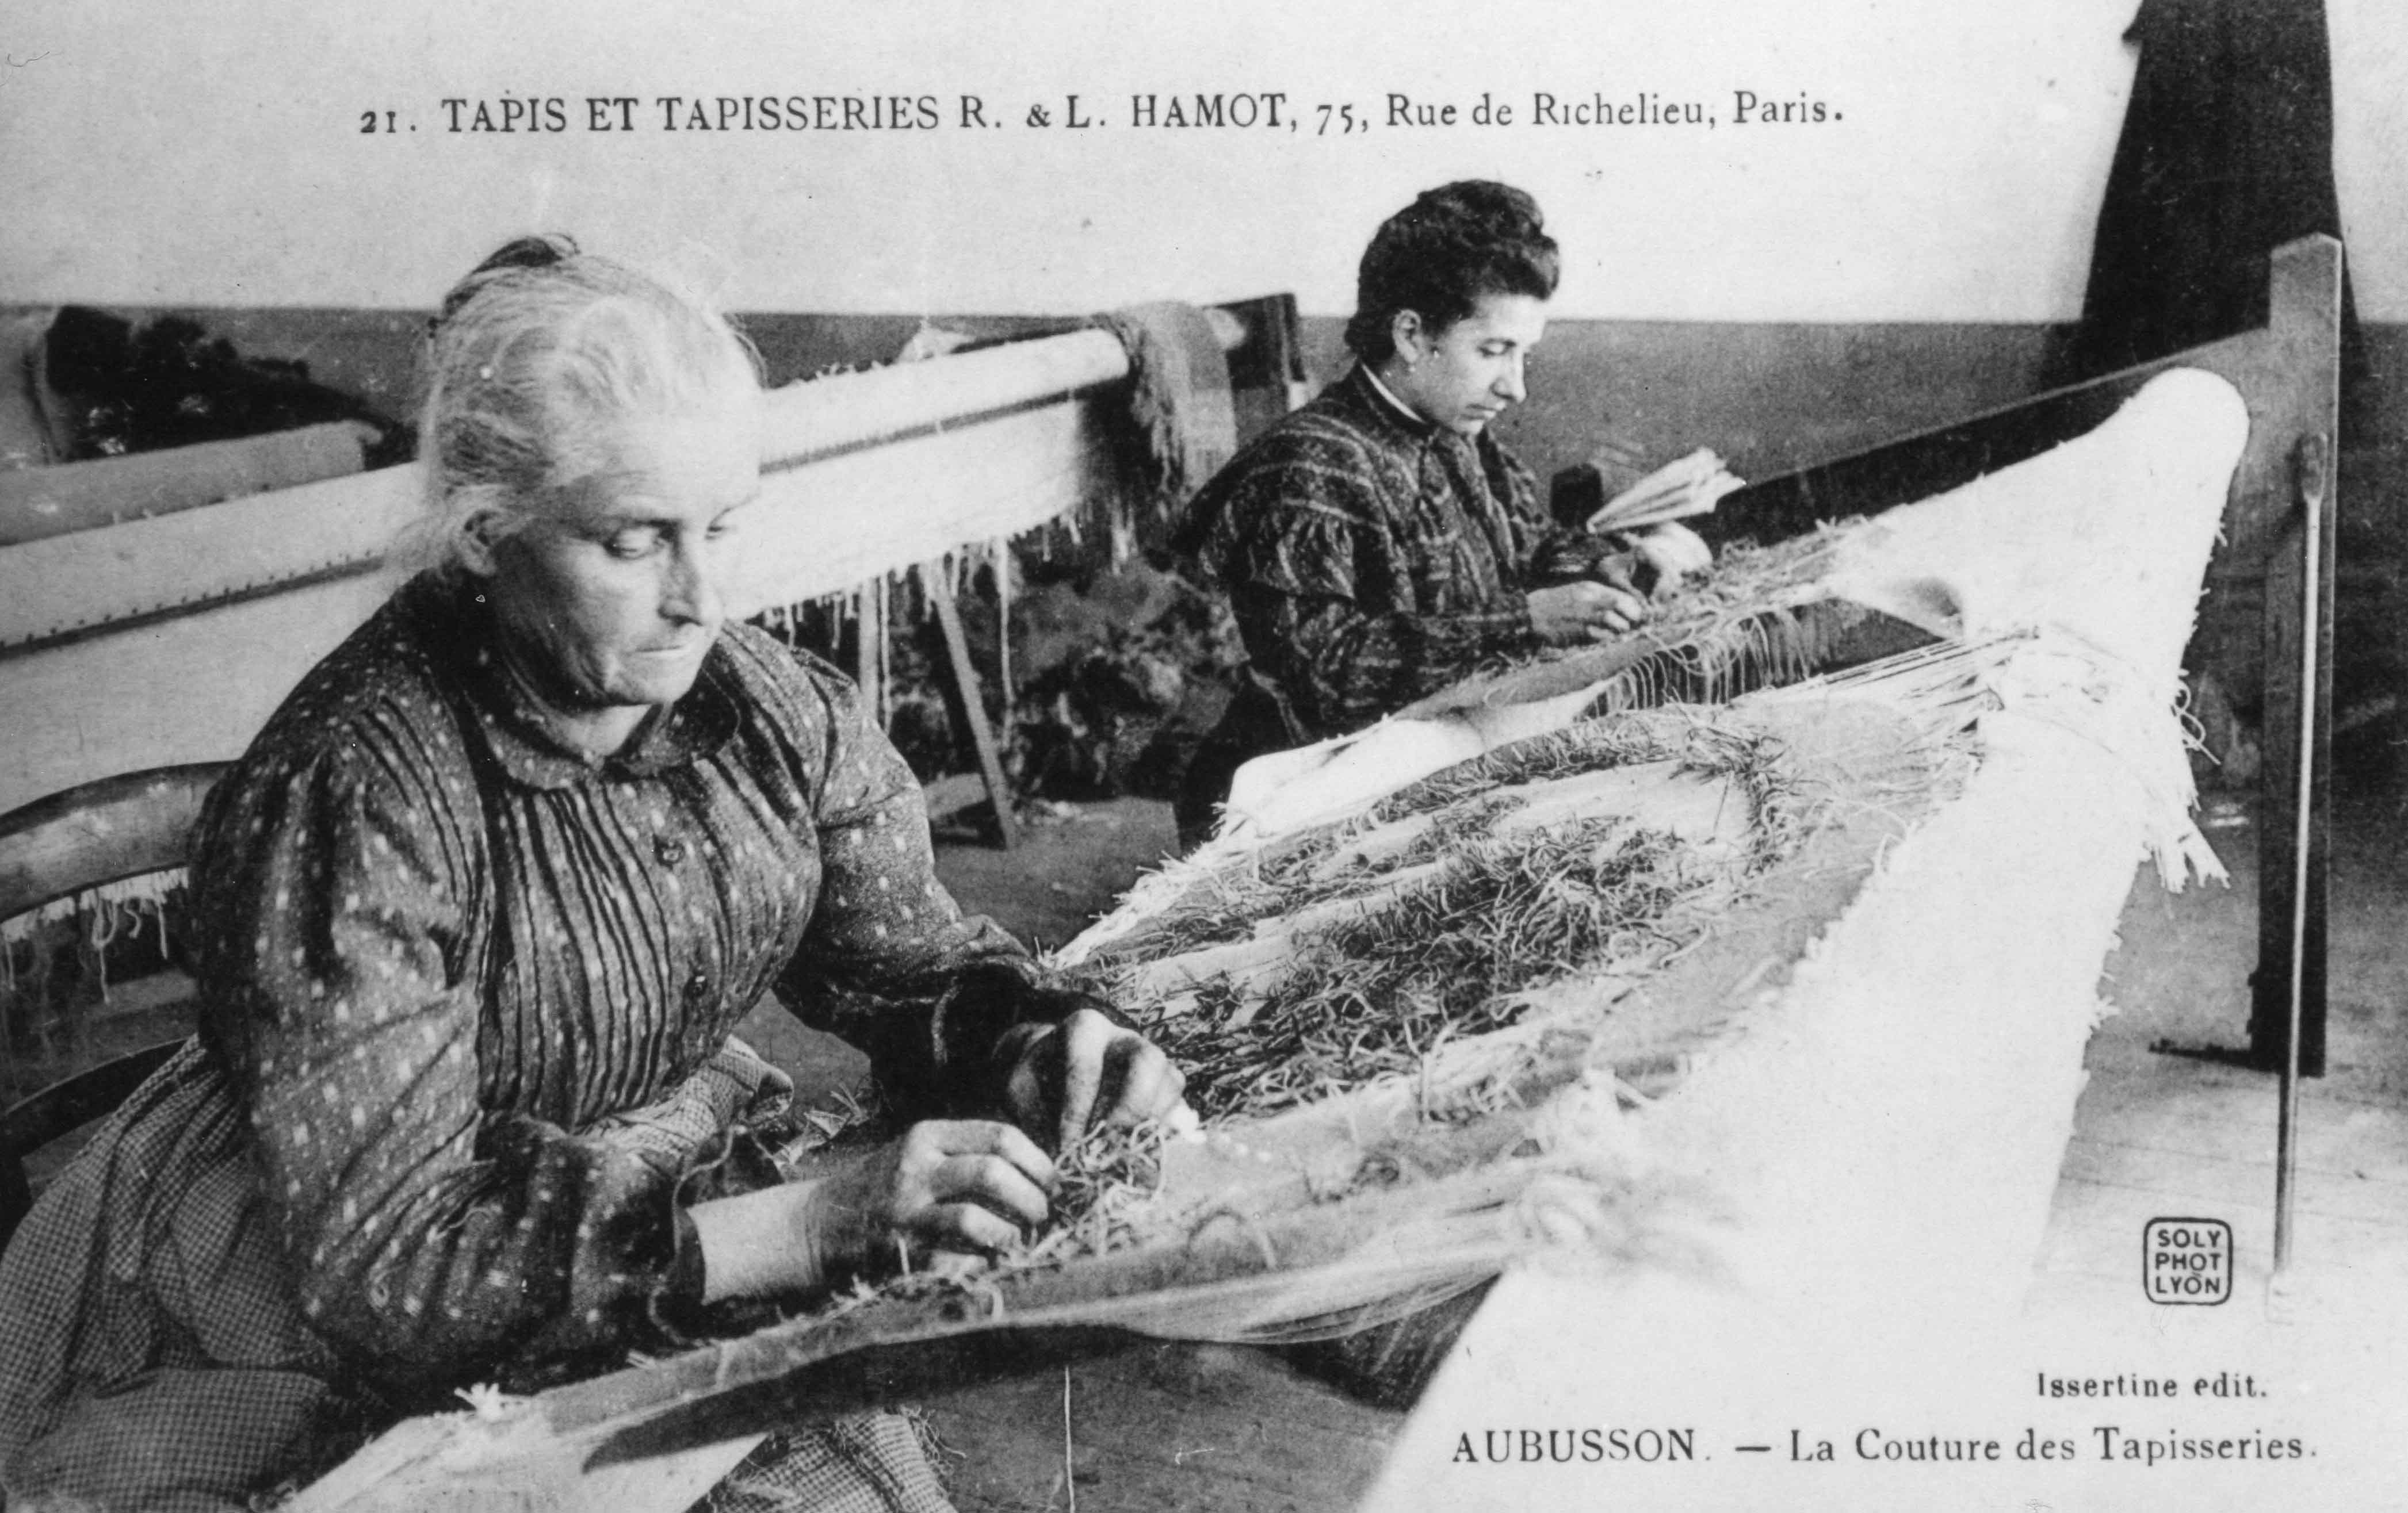 Carte postale (1er quart 20e siècle) : la couture des tapisseries (Aubusson, centre de documentation du Musée départemental de la Tapisserie)